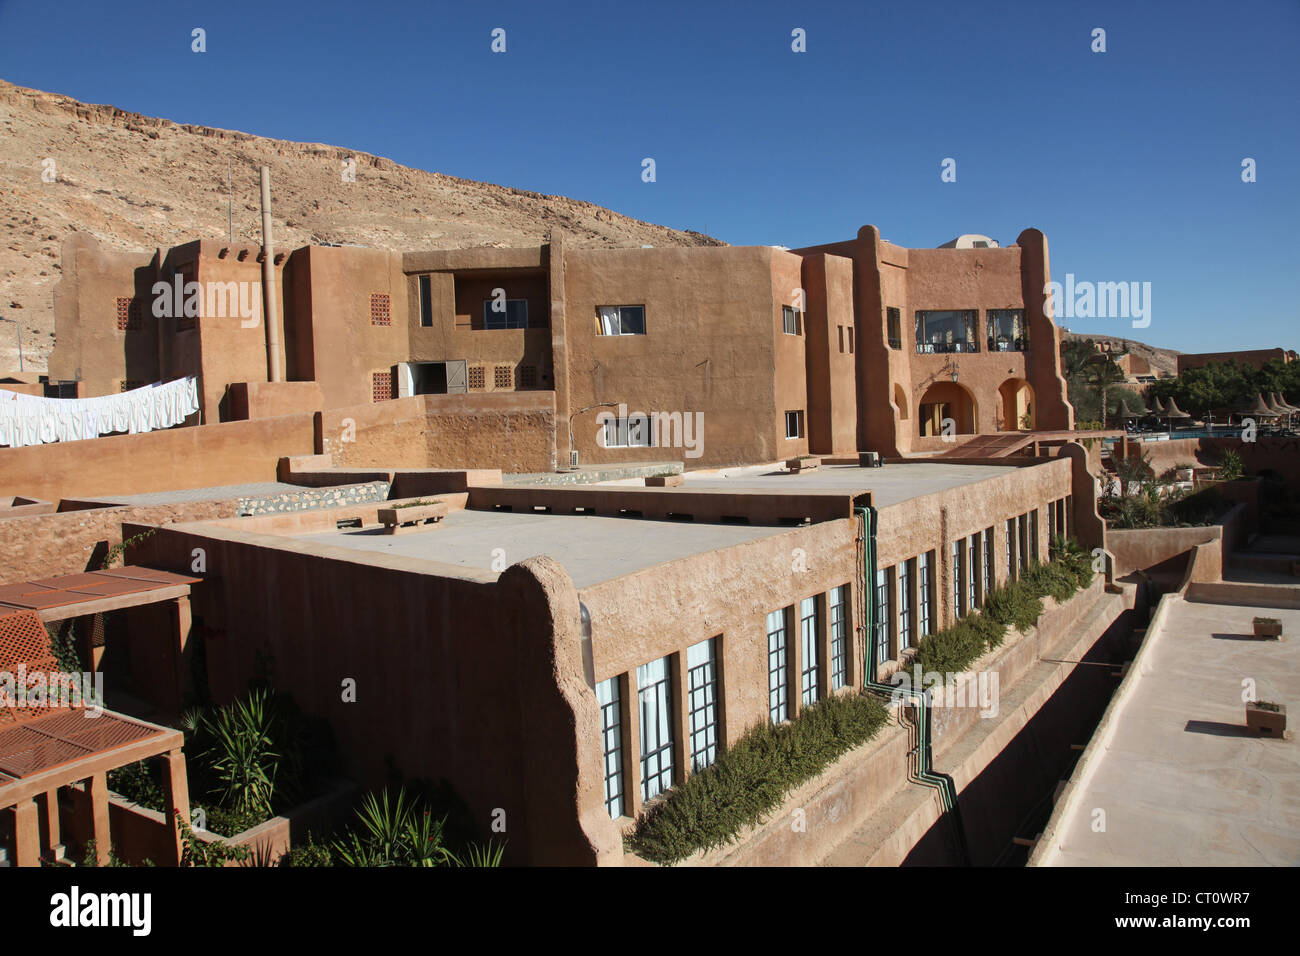 Hotel in the desert, Tamerza, Tunisia Stock Photo